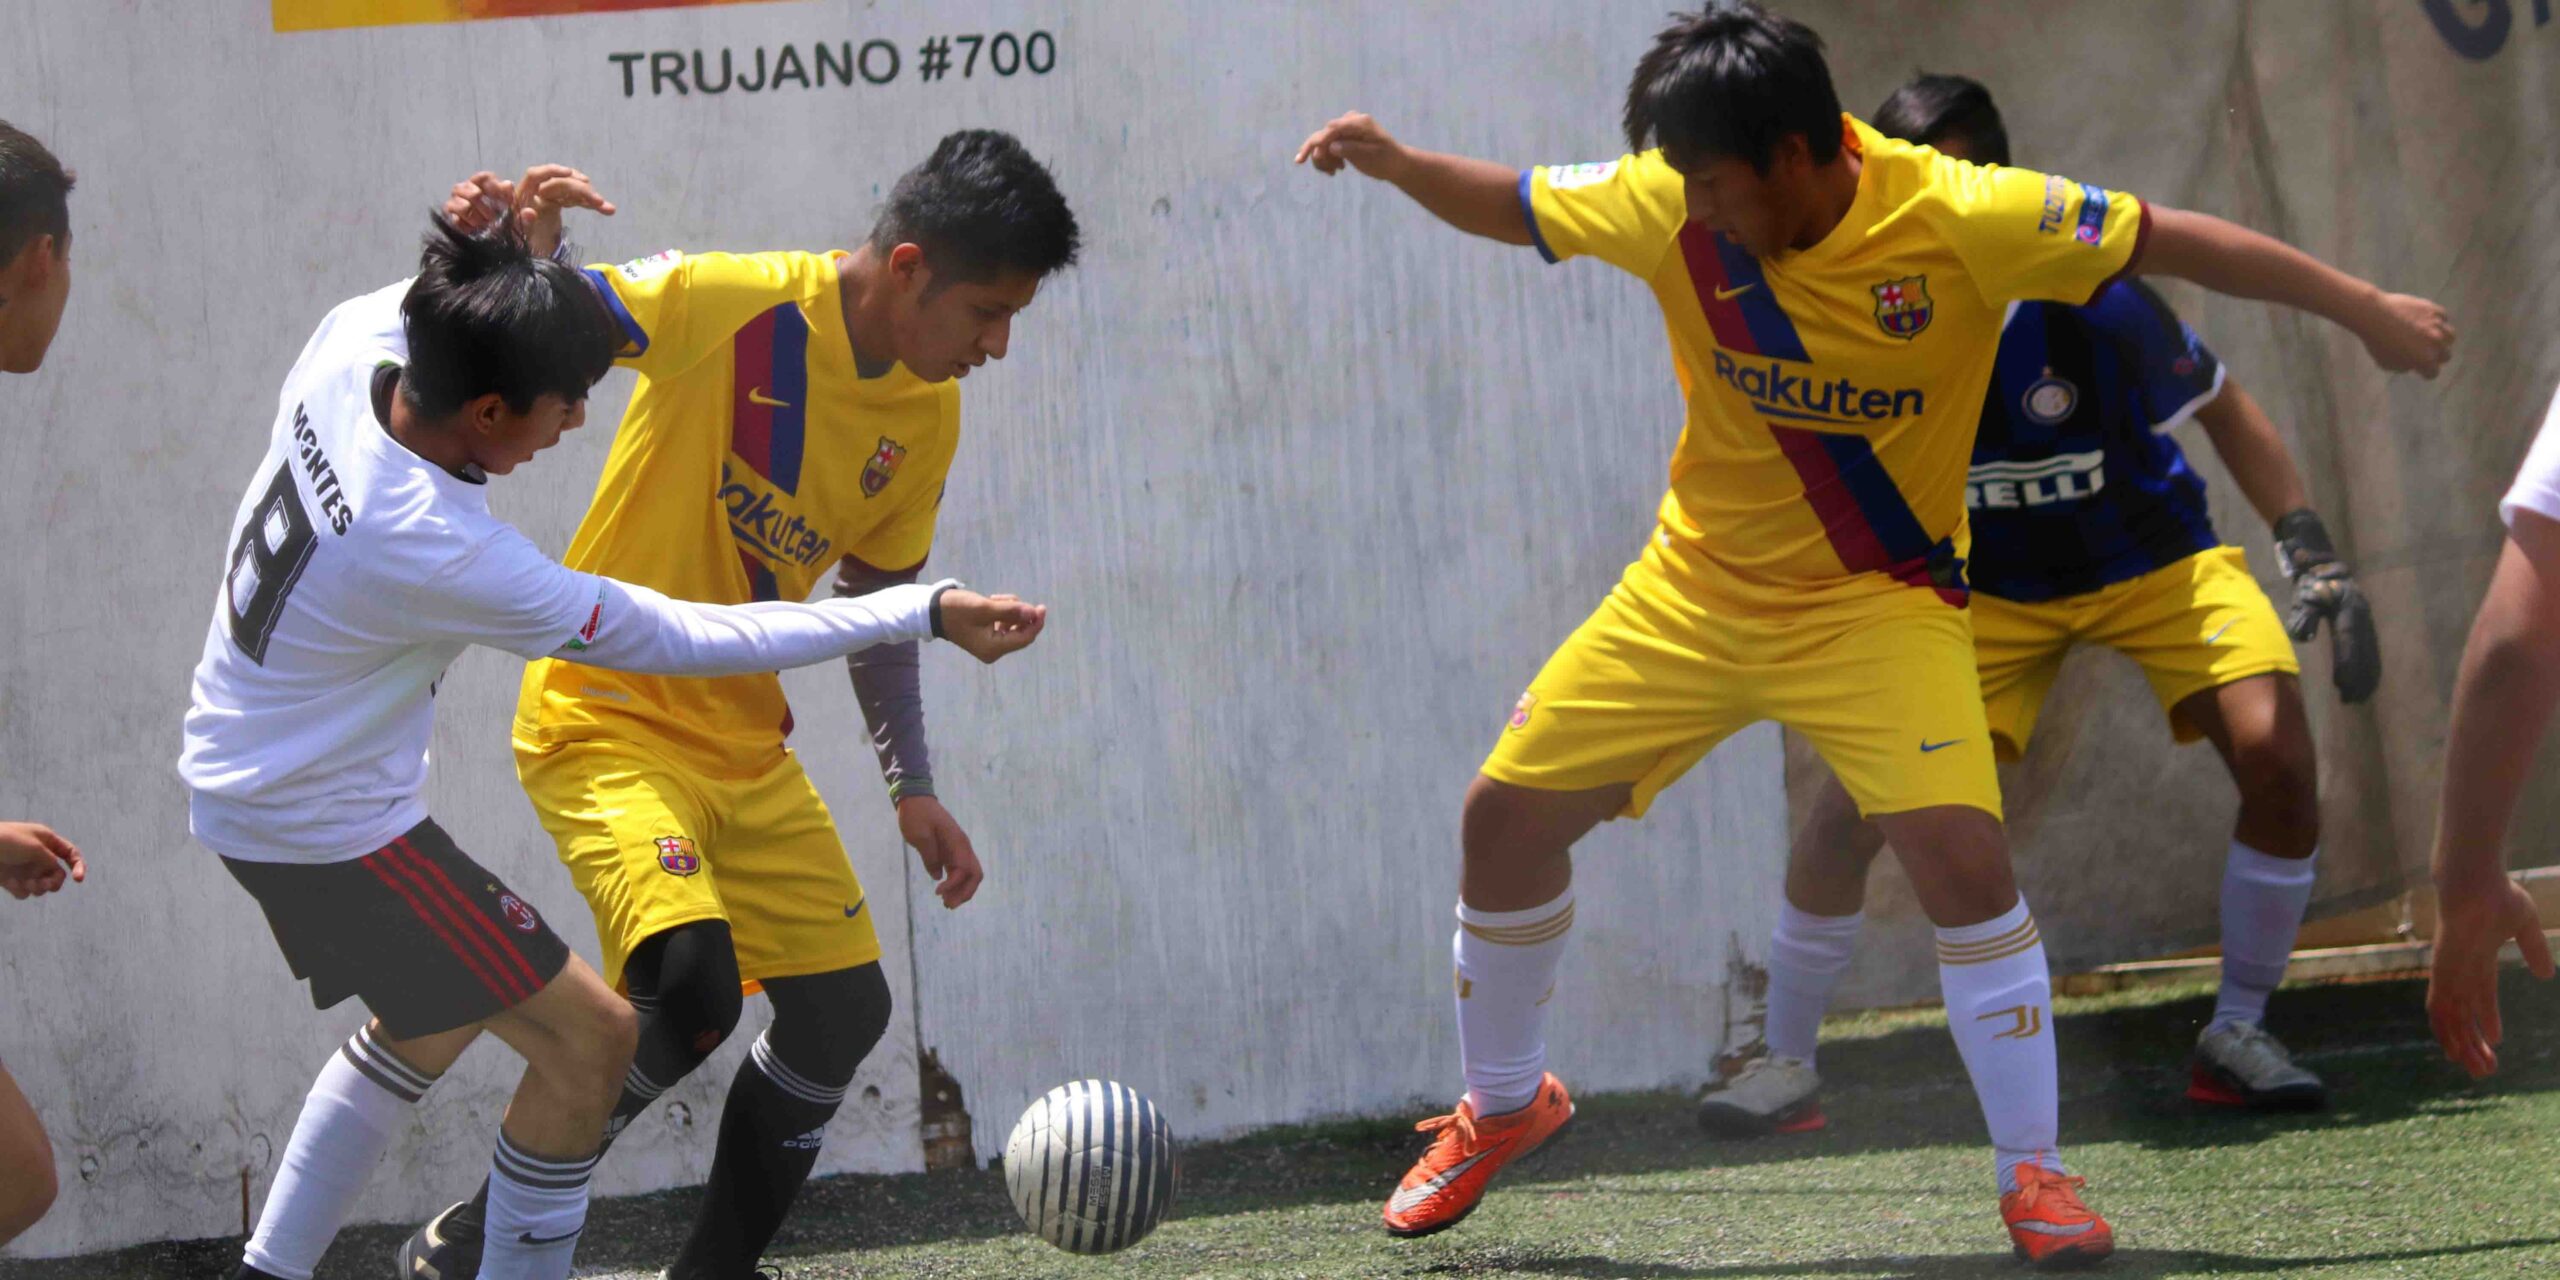 Tuzitos campeones de la categoría sub-17 en la liga Galaxia | El Imparcial de Oaxaca